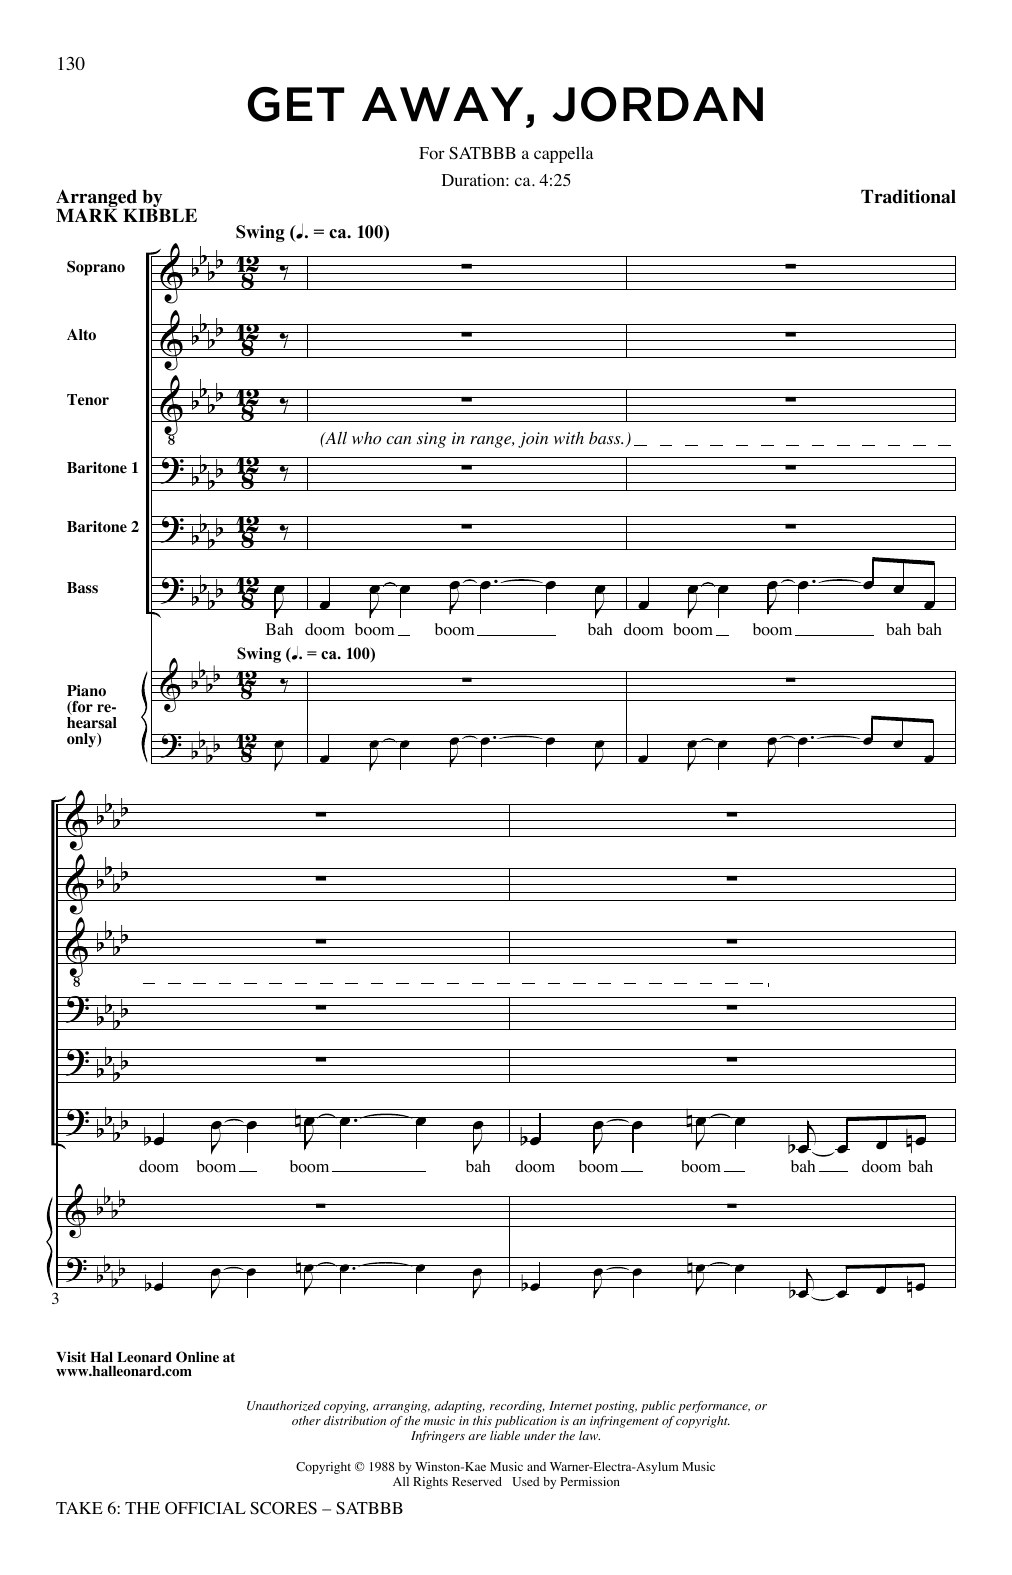 Take 6 Get Away Jordan Sheet Music Notes & Chords for SATB Choir - Download or Print PDF